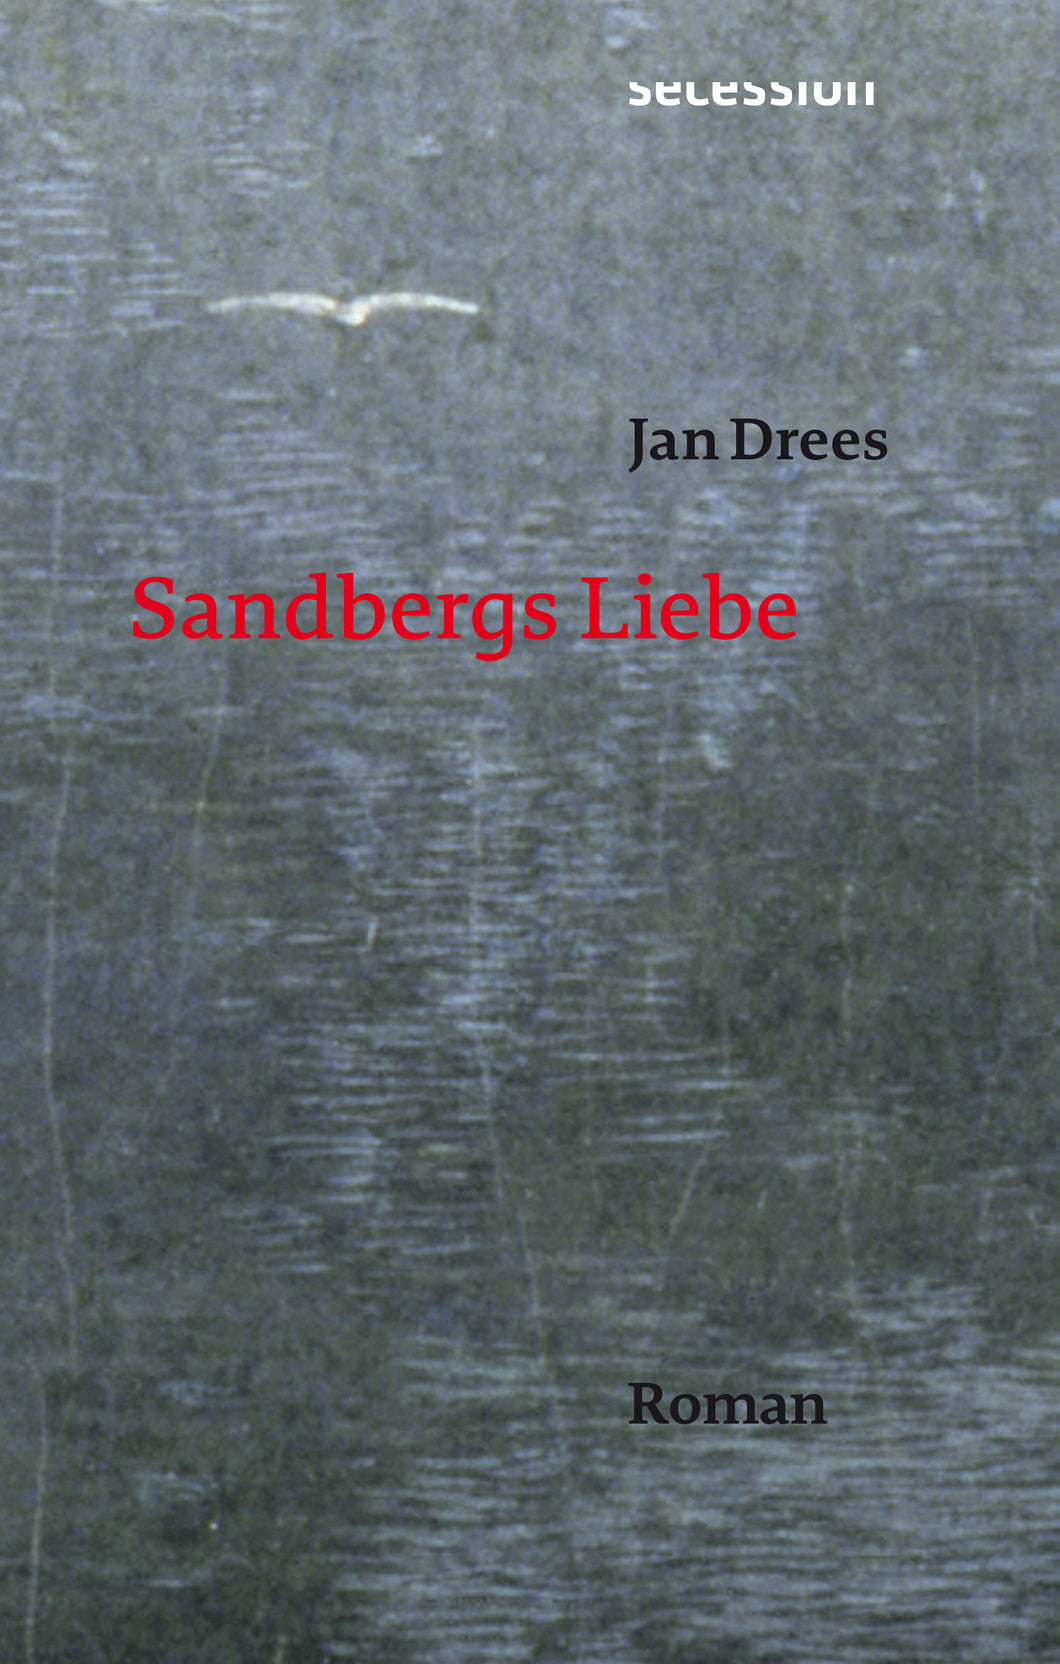 Sandbergs Liebe von Jan Drees